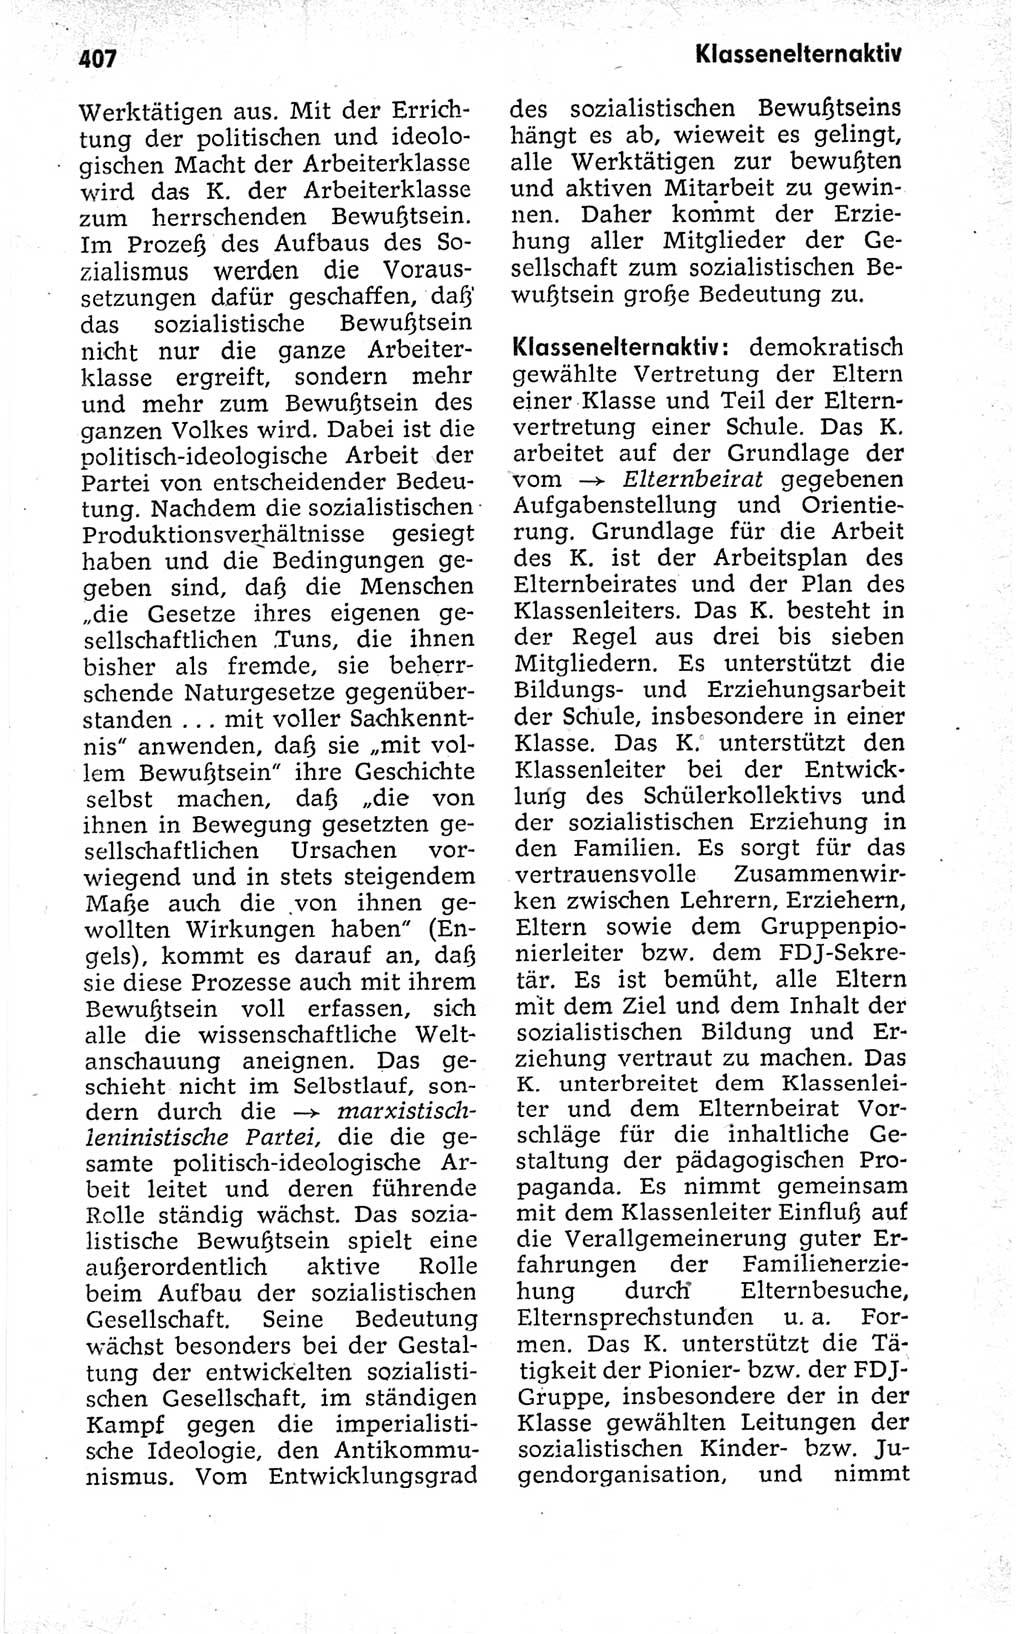 Kleines politisches Wörterbuch [Deutsche Demokratische Republik (DDR)] 1973, Seite 407 (Kl. pol. Wb. DDR 1973, S. 407)